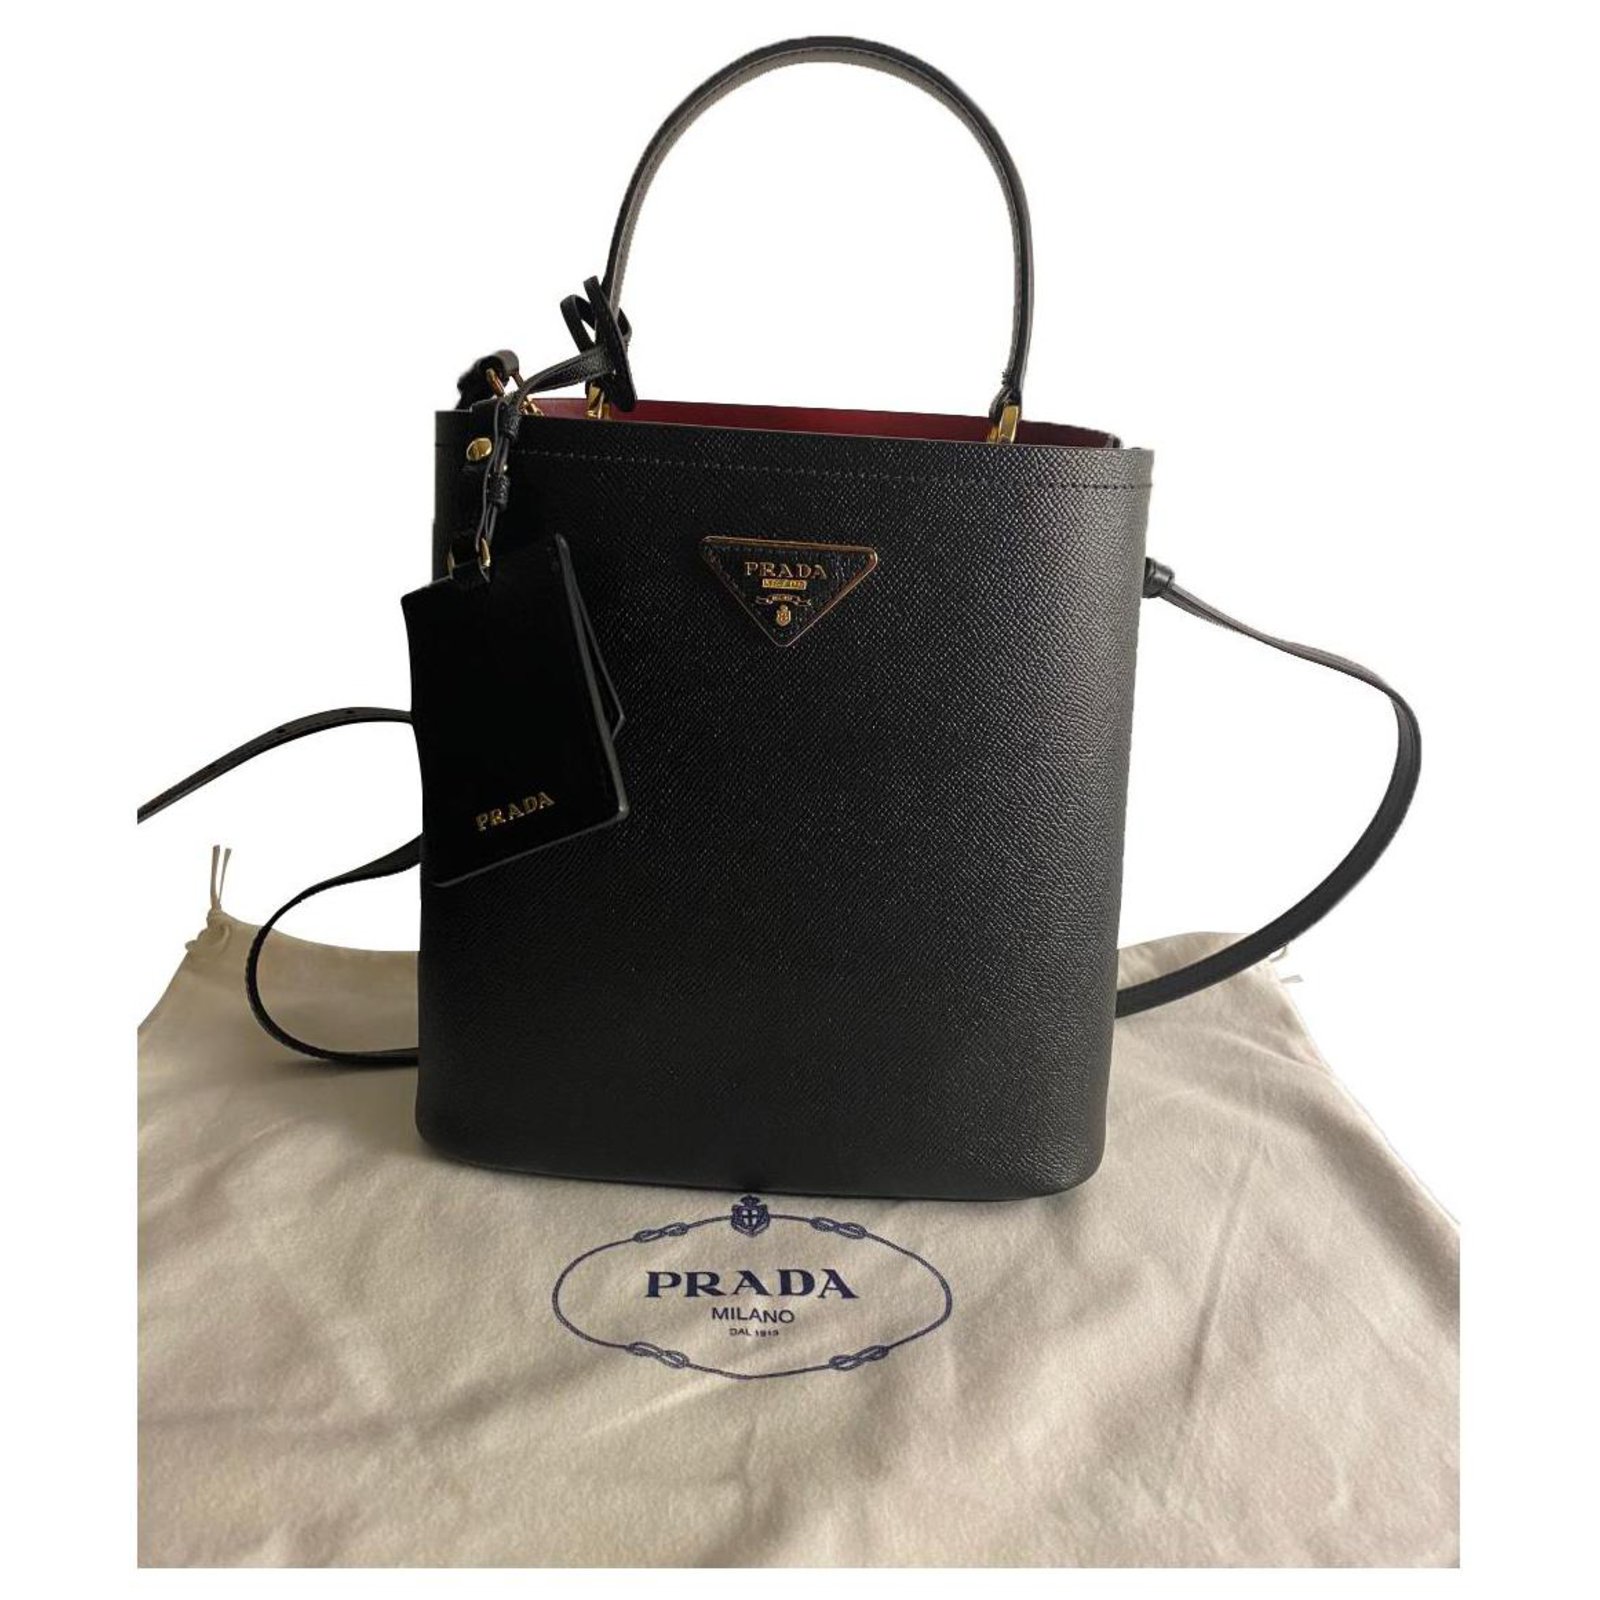 Prada Panier Saffiano Small Bag